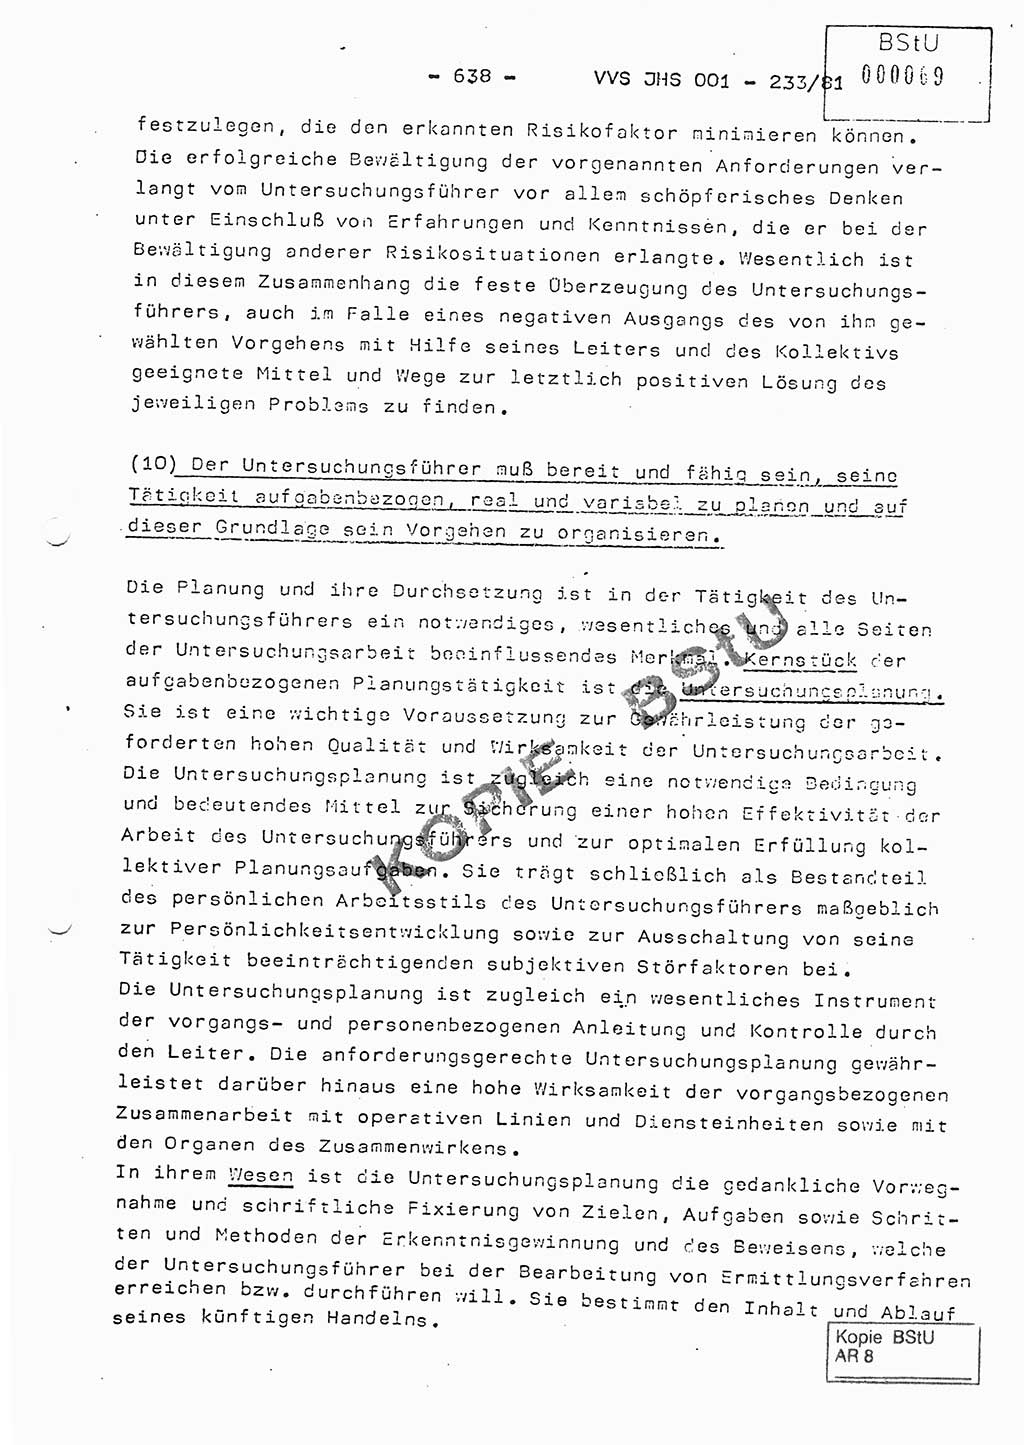 Dissertation Oberstleutnant Horst Zank (JHS), Oberstleutnant Dr. Karl-Heinz Knoblauch (JHS), Oberstleutnant Gustav-Adolf Kowalewski (HA Ⅸ), Oberstleutnant Wolfgang Plötner (HA Ⅸ), Ministerium für Staatssicherheit (MfS) [Deutsche Demokratische Republik (DDR)], Juristische Hochschule (JHS), Vertrauliche Verschlußsache (VVS) o001-233/81, Potsdam 1981, Blatt 638 (Diss. MfS DDR JHS VVS o001-233/81 1981, Bl. 638)